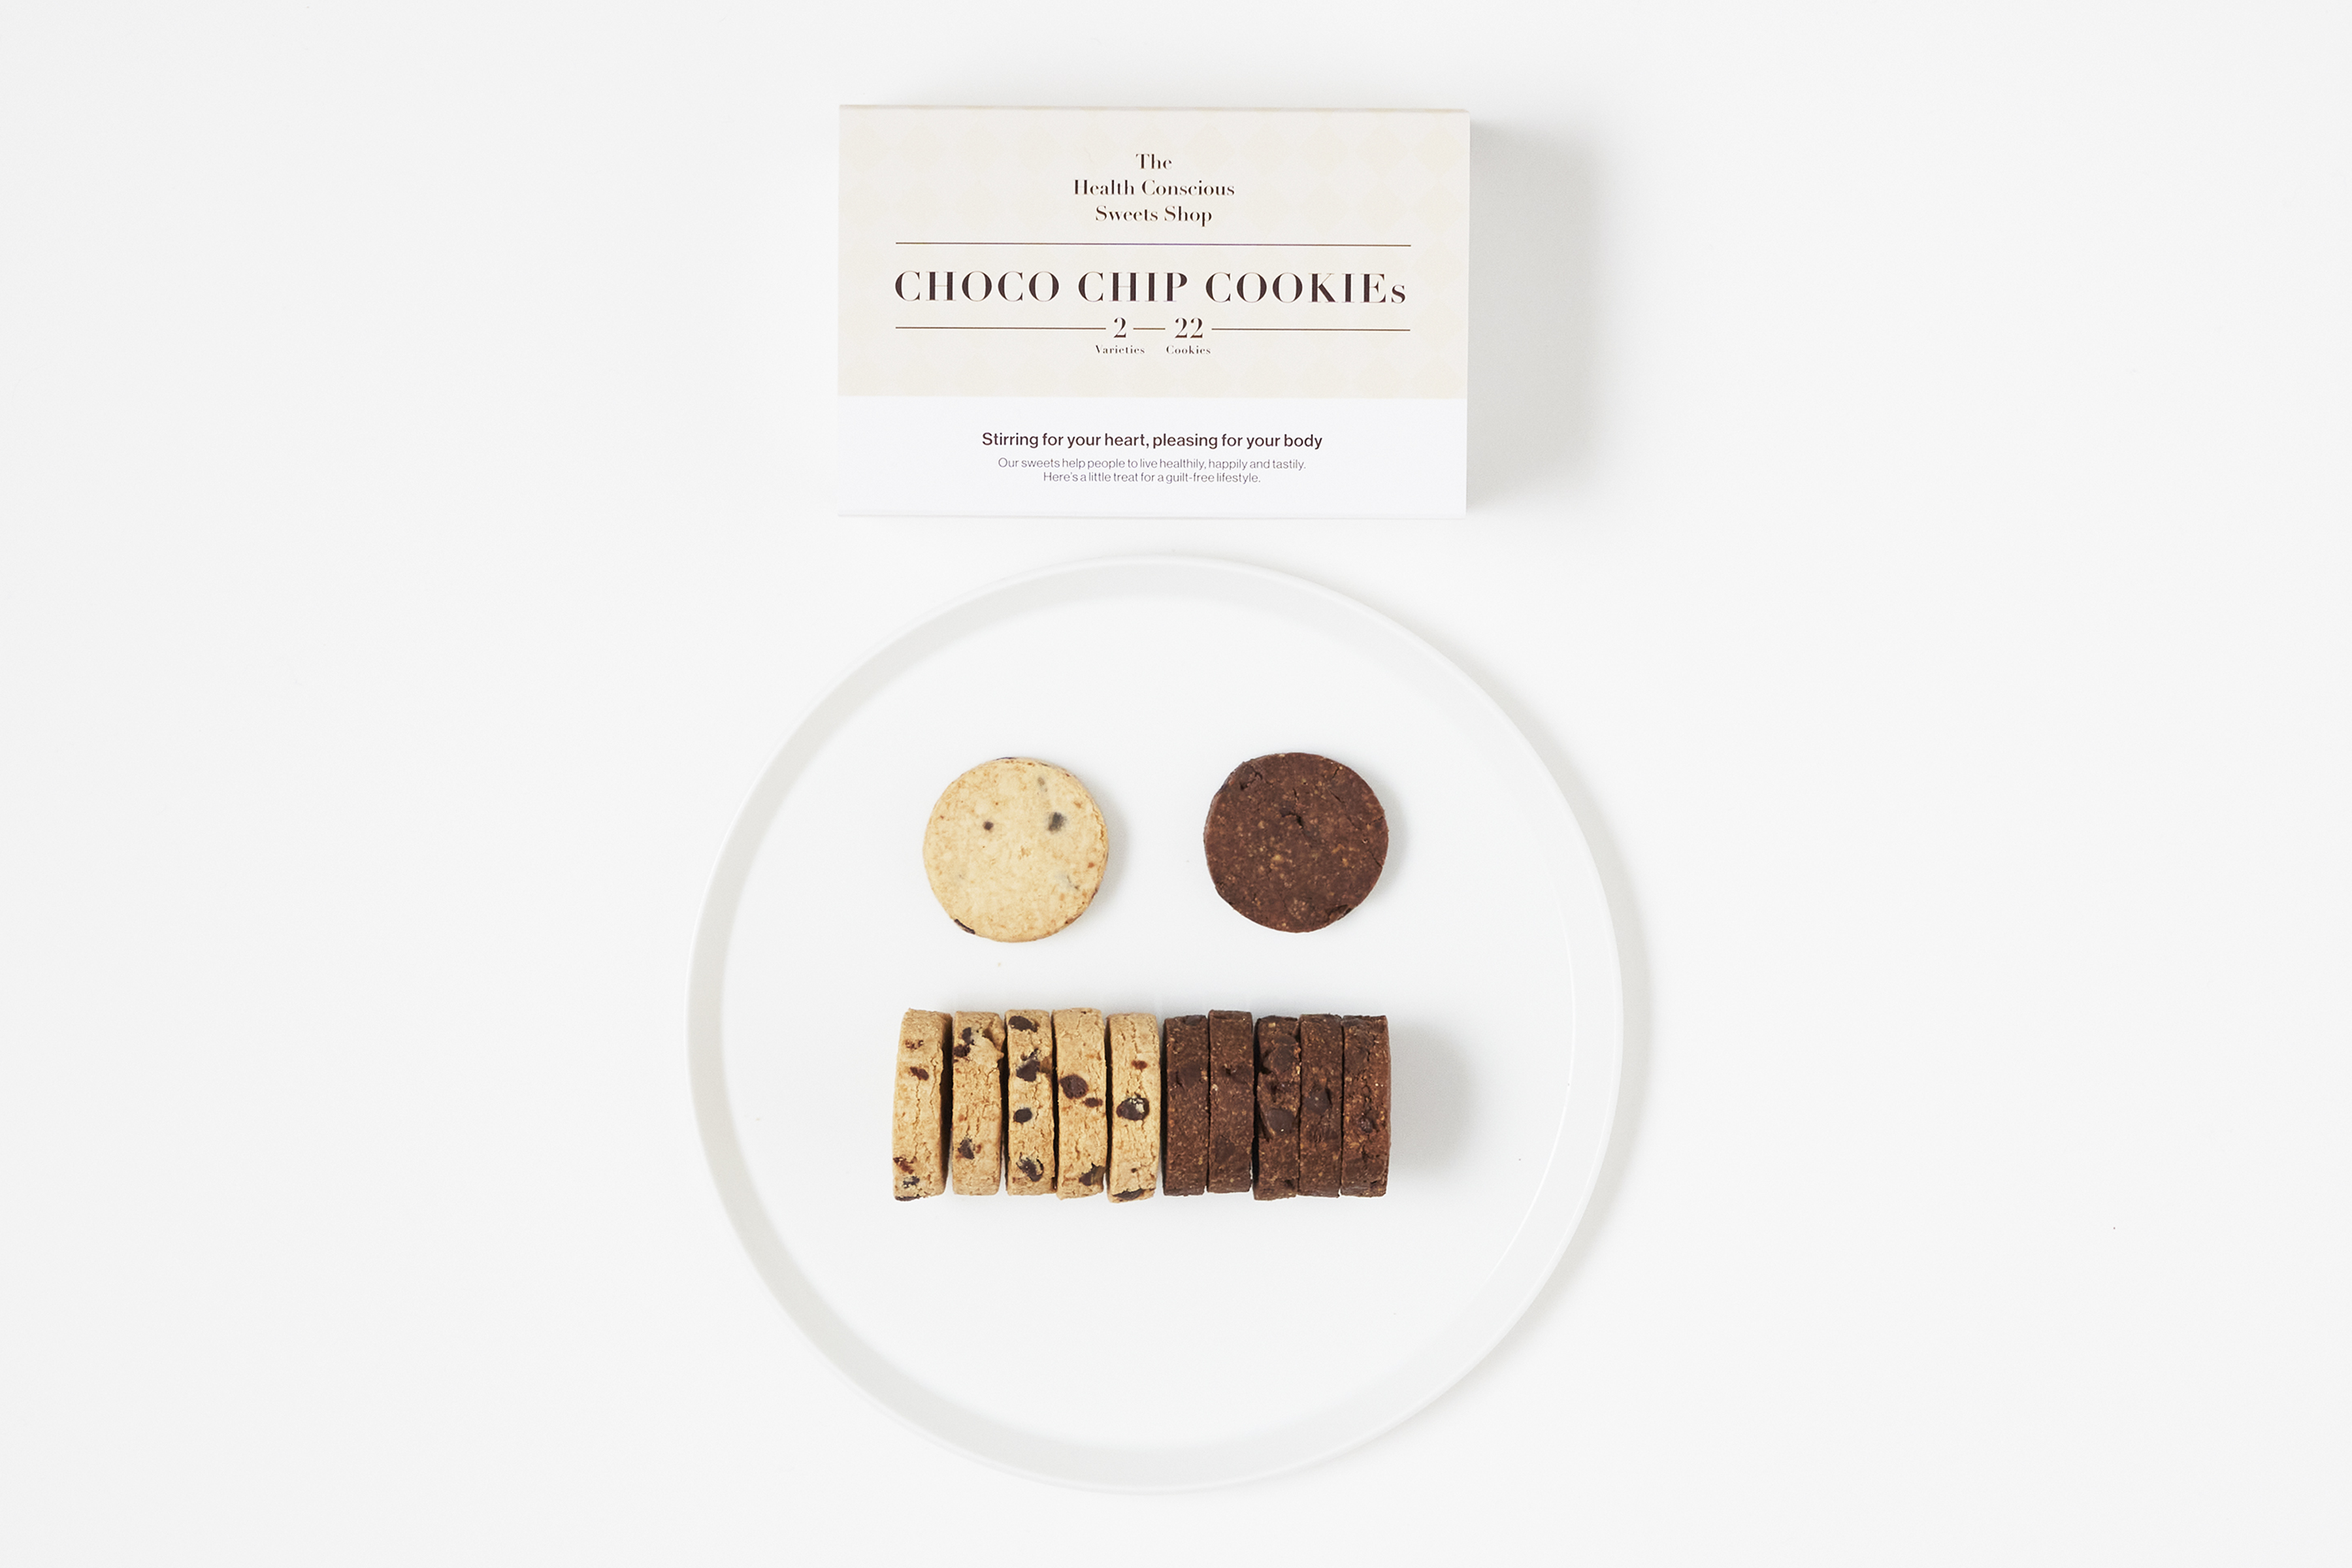 CHOCO CHIP COOKIEs 2 varieties 22 cookies / チョコチップクッキー2種類 22個入り | thstokyo  powered by BASE